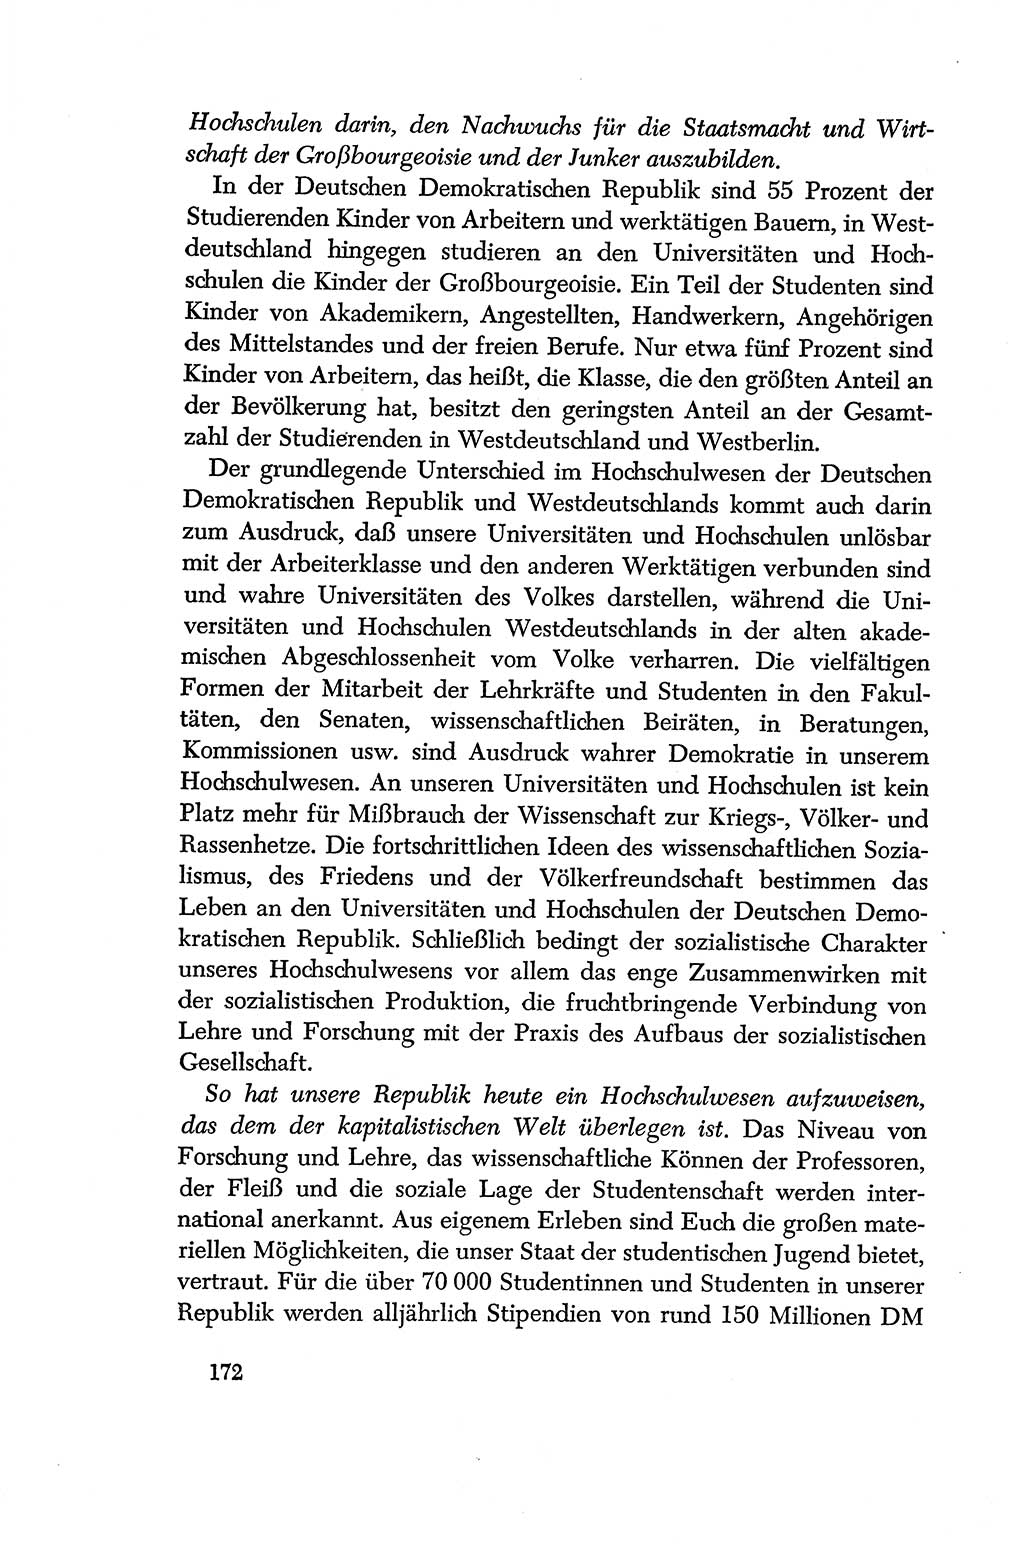 Dokumente der Sozialistischen Einheitspartei Deutschlands (SED) [Deutsche Demokratische Republik (DDR)] 1956-1957, Seite 172 (Dok. SED DDR 1956-1957, S. 172)